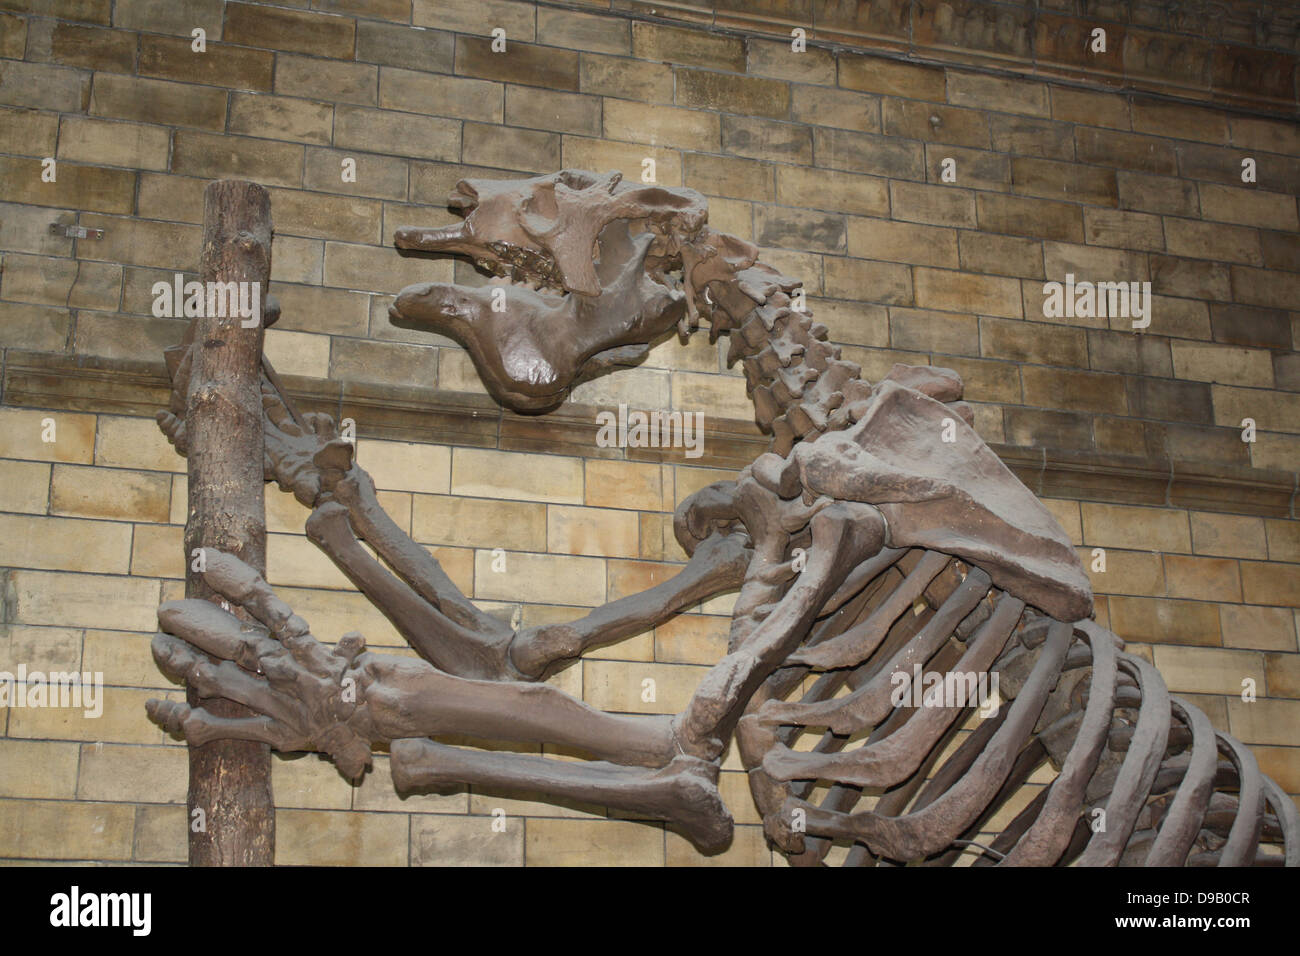 Ausgestorben Säugetier - Megatherium Americanum. Giant Ground Sloth lebte in den kühlen, trockenen Gestrüpp und Grasland von Südamerika bis vor etwa 10.000 Jahren. Das Skelett ist oft für die eines Dinosauriers verwechselt, aber die Giant Ground Sloth war eigentlich ein Säugetier, ein Ausgestorbener Verwandter des lebenden Baum Faultier. Wissenschaftlicher Name Megatherium bedeutet "grosses Tier". Stockfoto